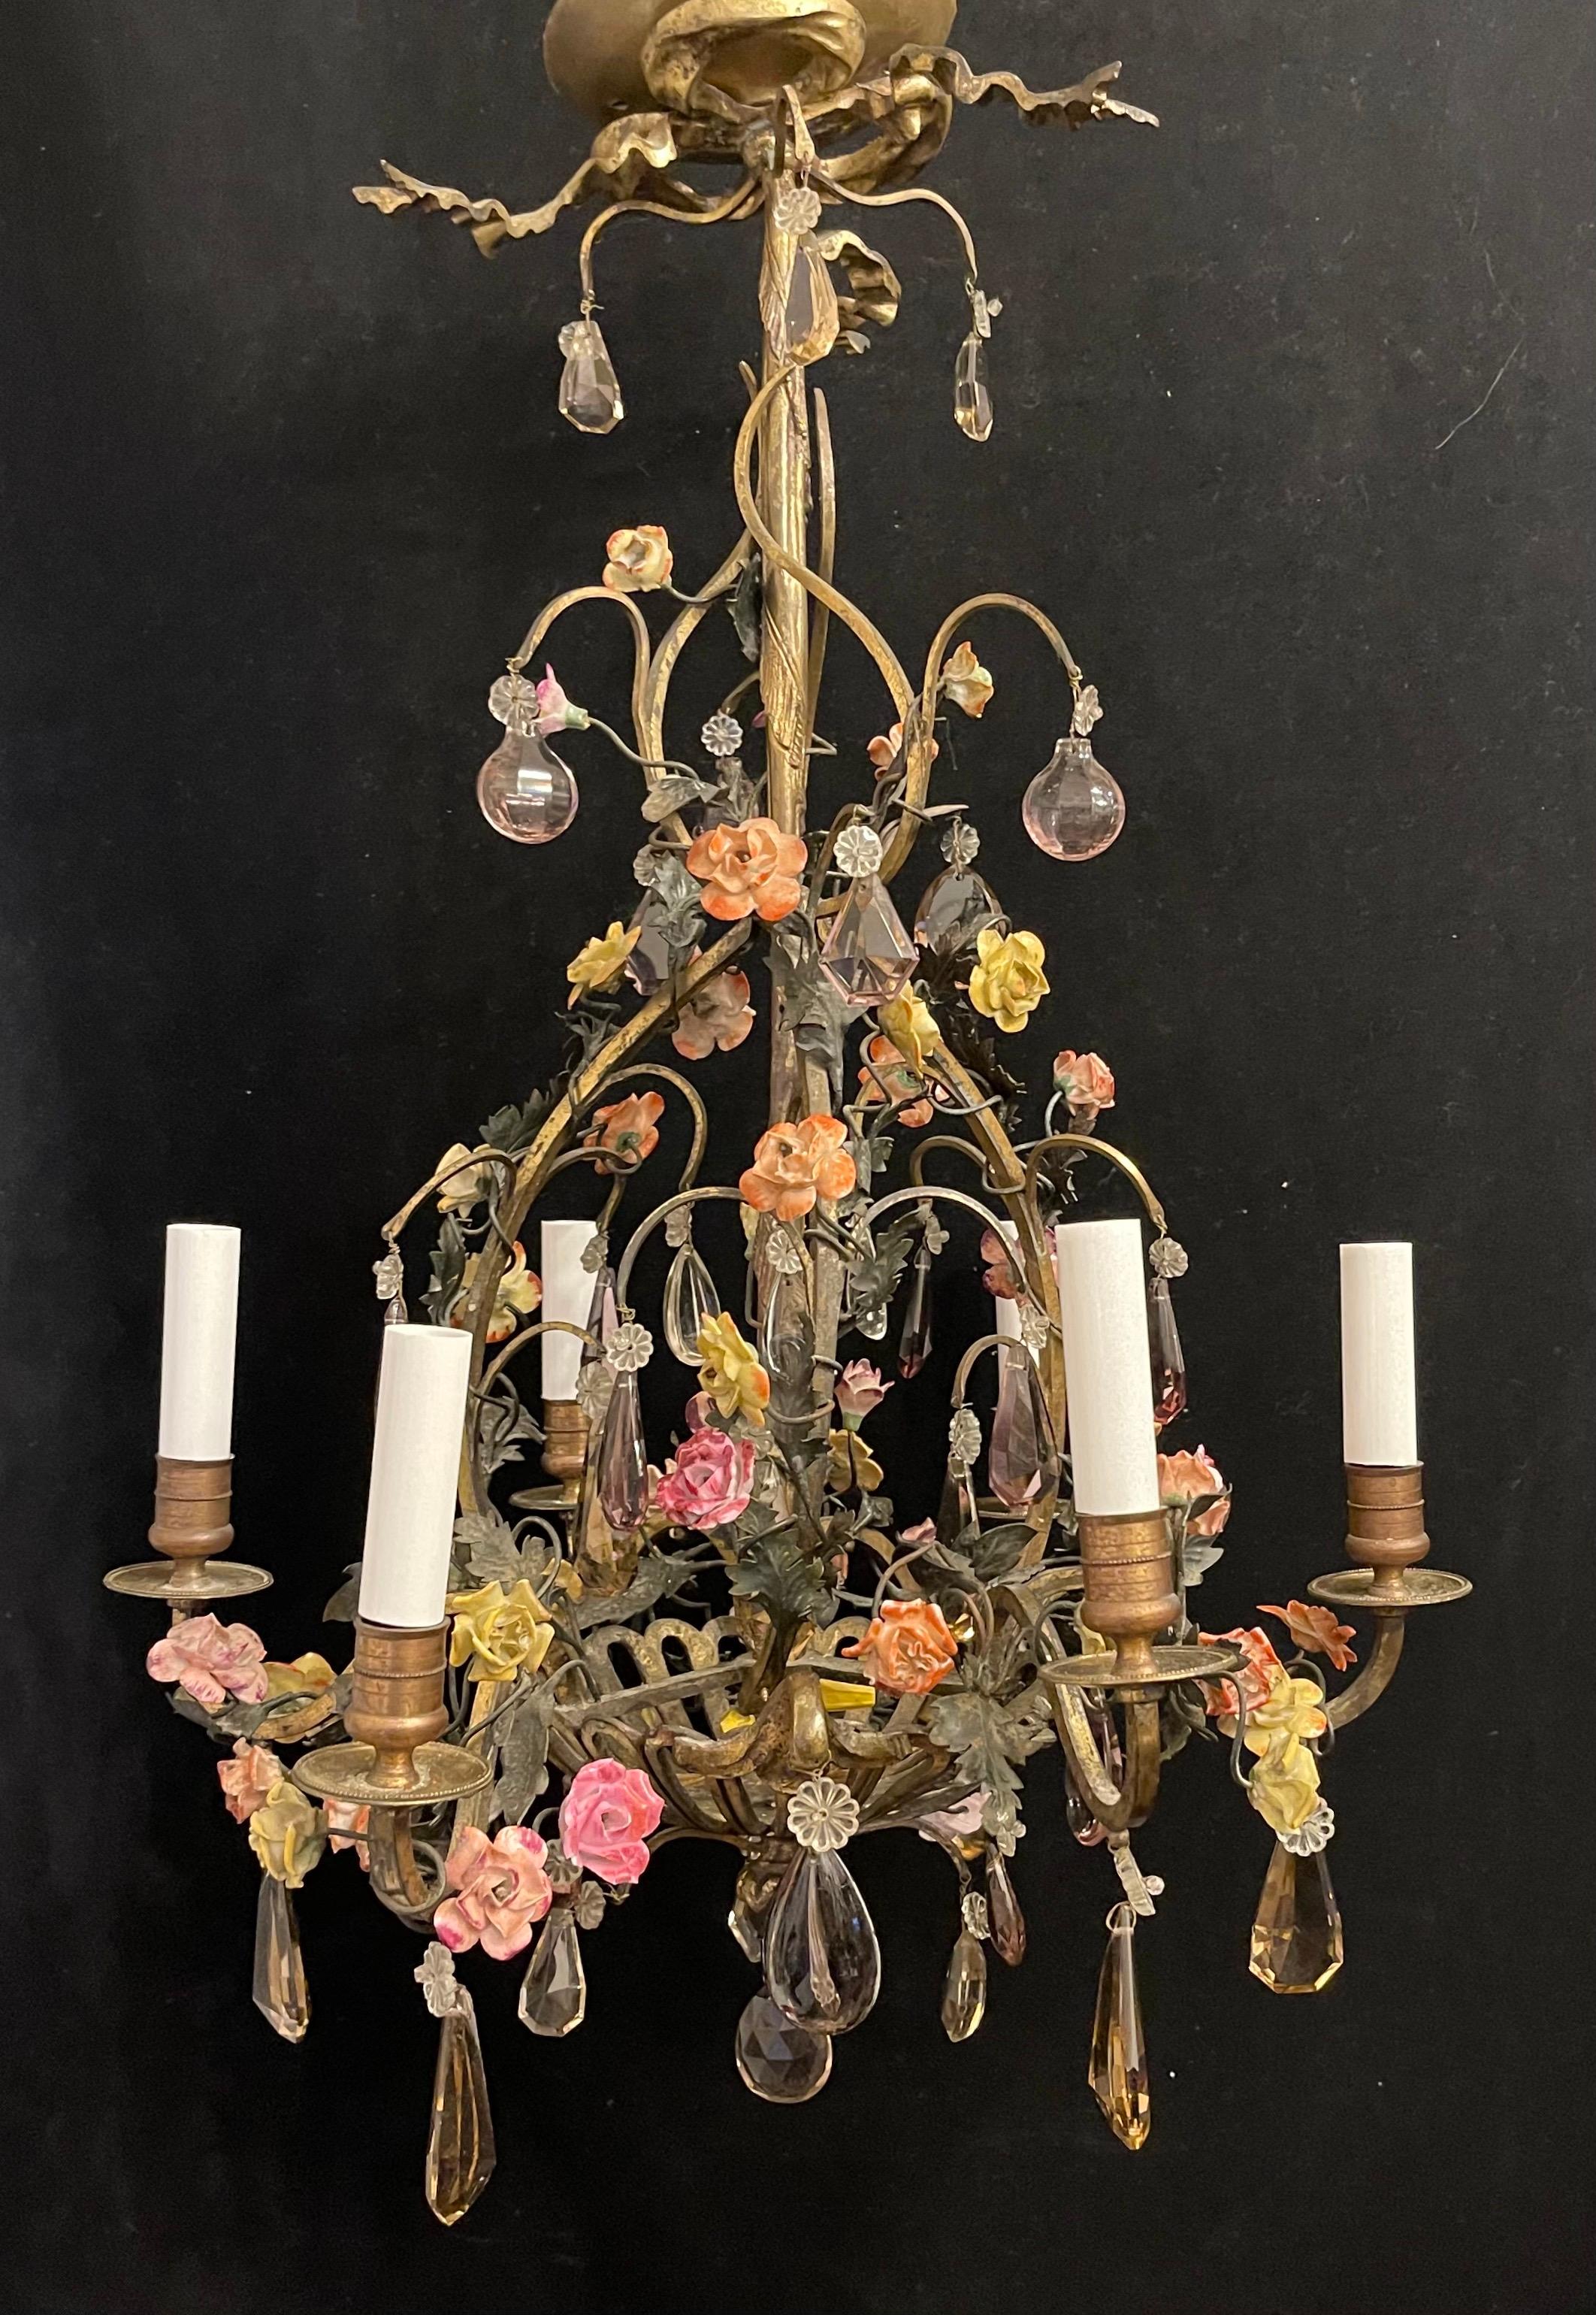 Merveilleux lustre français en bronze et cristal améthyste, de style Louis XV, en forme de panier avec ruban et nœud en haut, avec 6 lampes candélabres, chacune prenant 40 watts par prise.